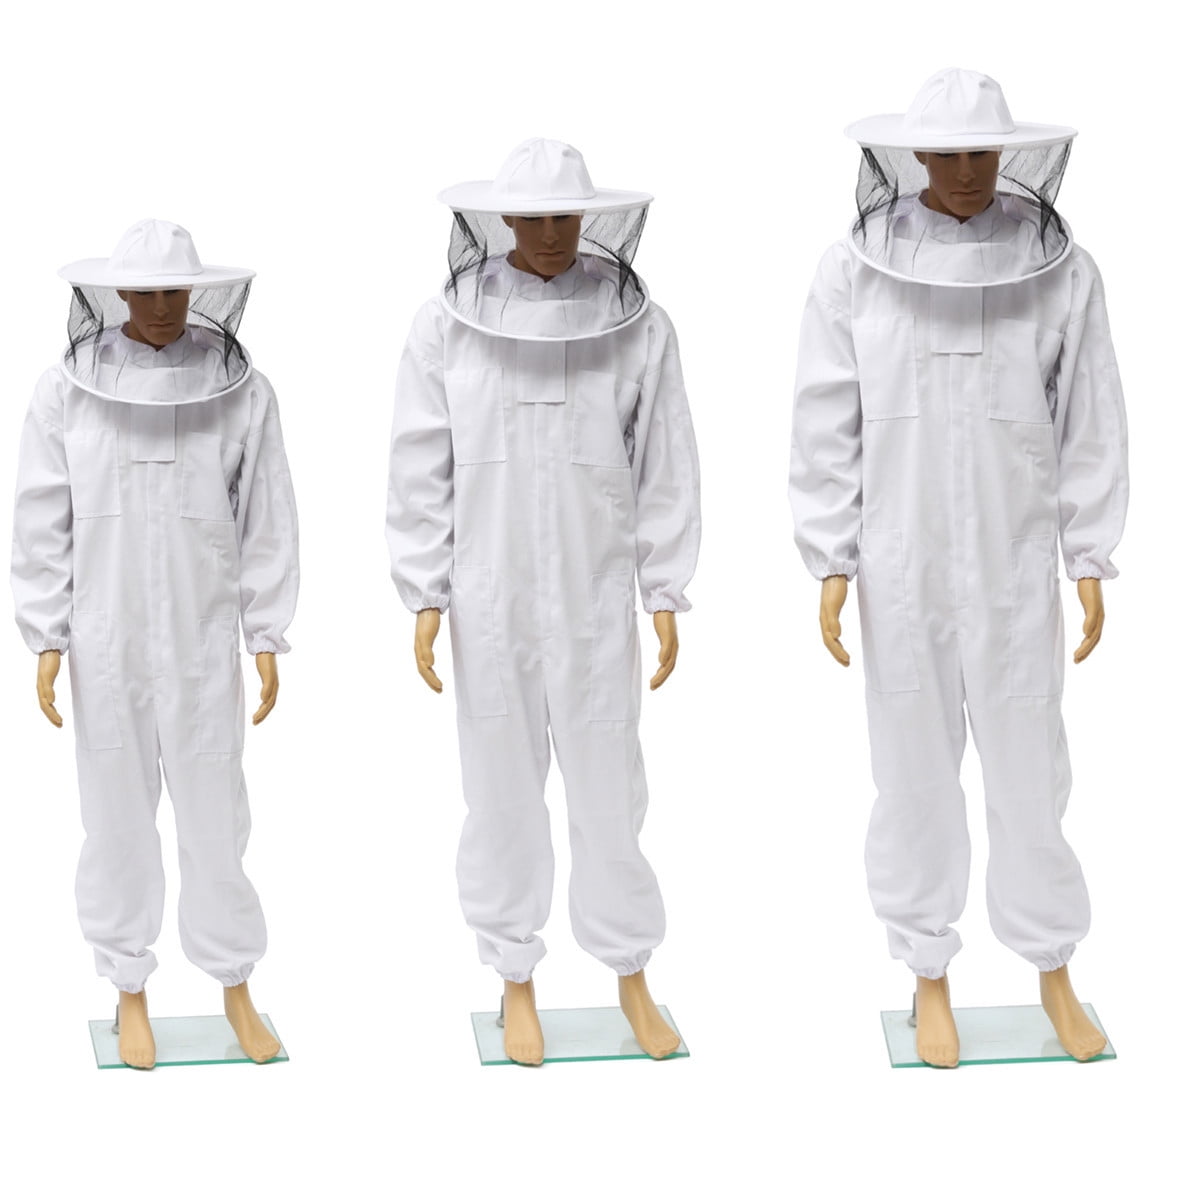 4x Beekeeper Smock Suit Beekeeping Keeping Hat Veil Sleeve Equipment White 